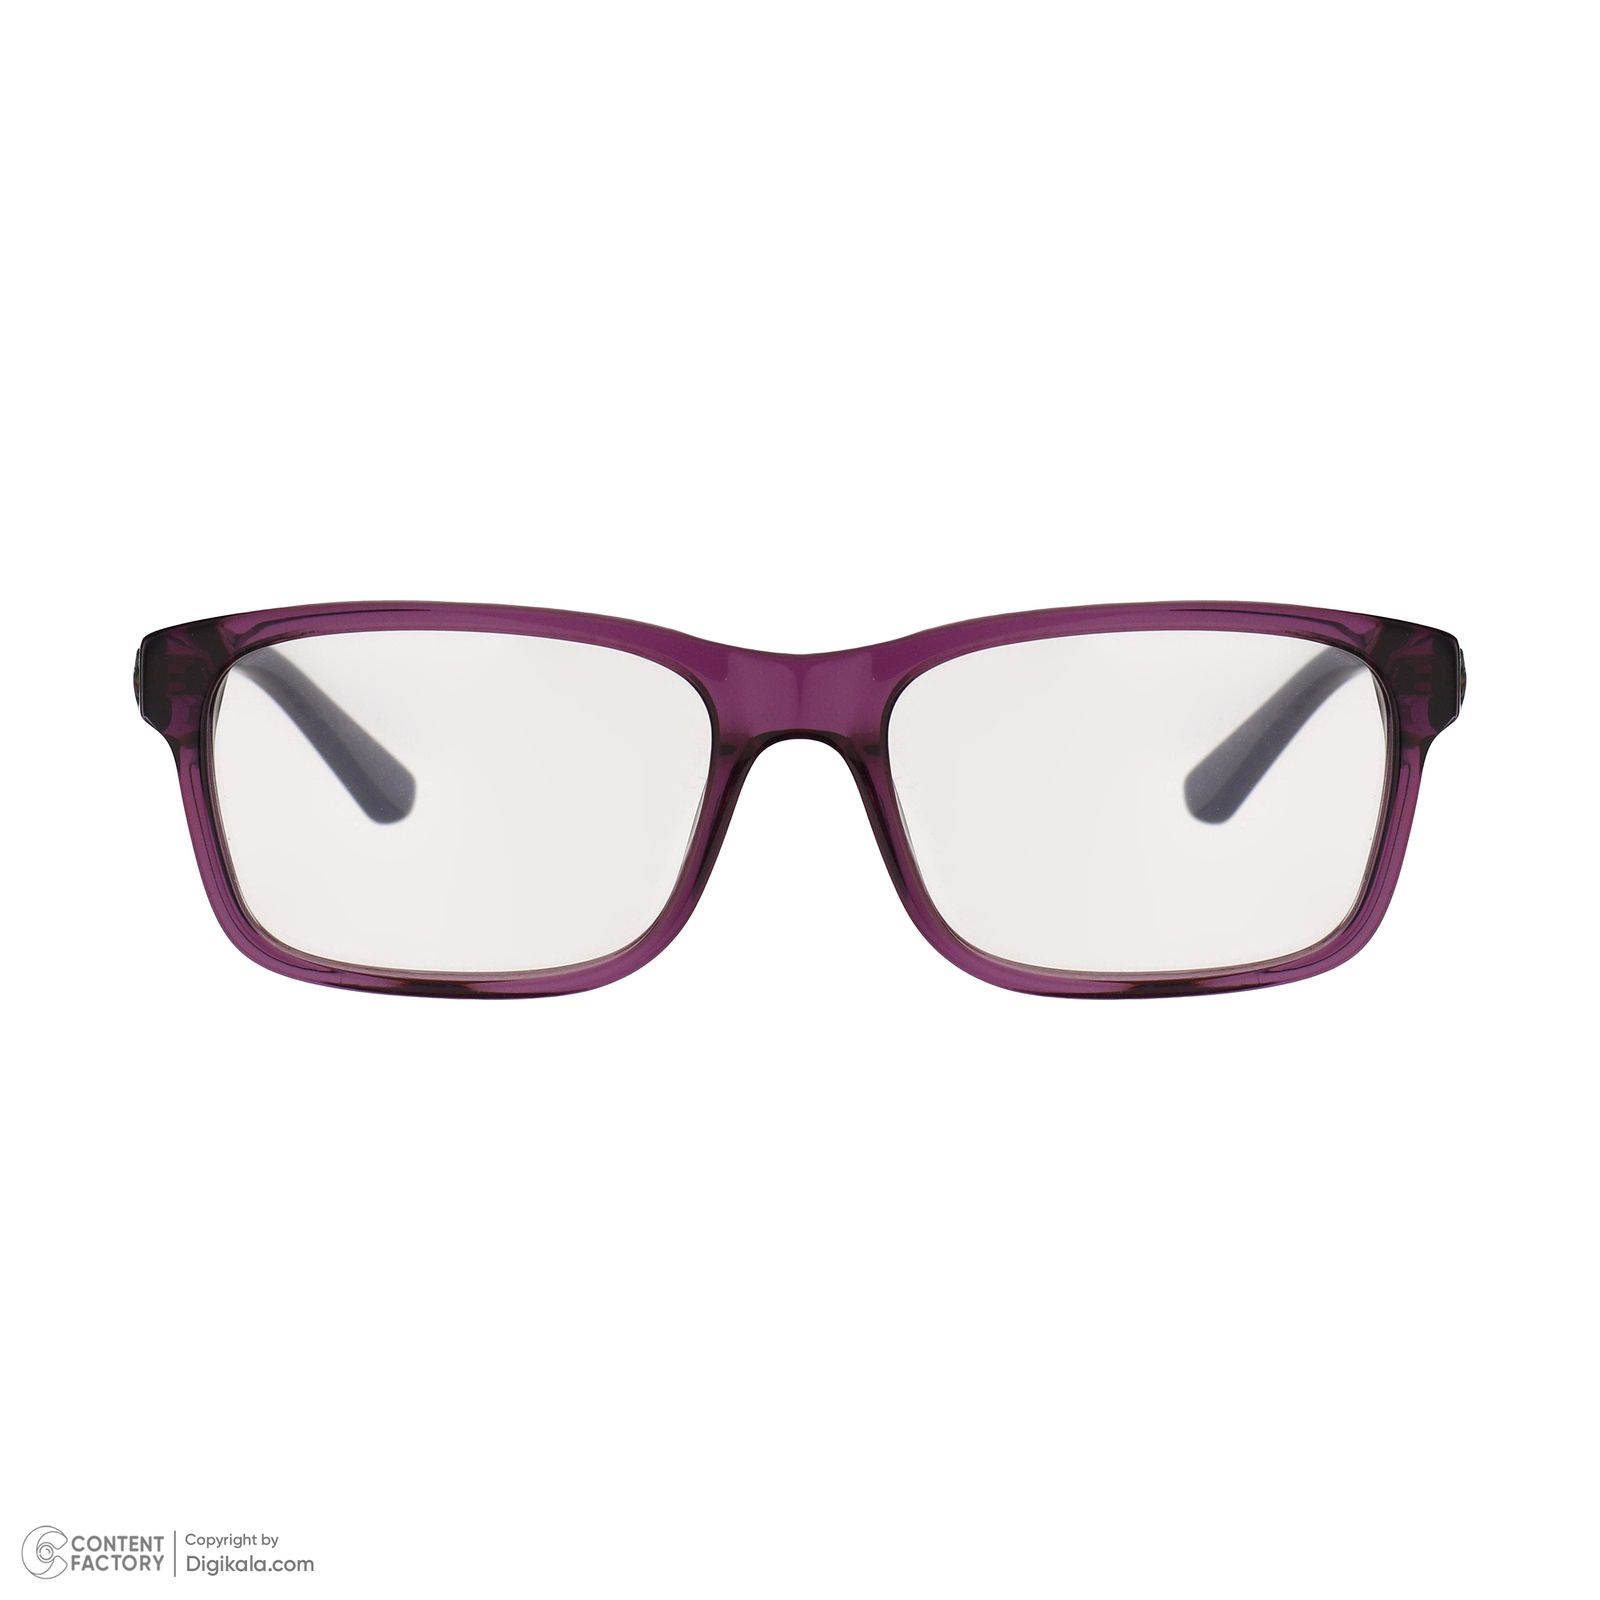 فریم عینک طبی لاگوست مدل 3612-514 -  - 3